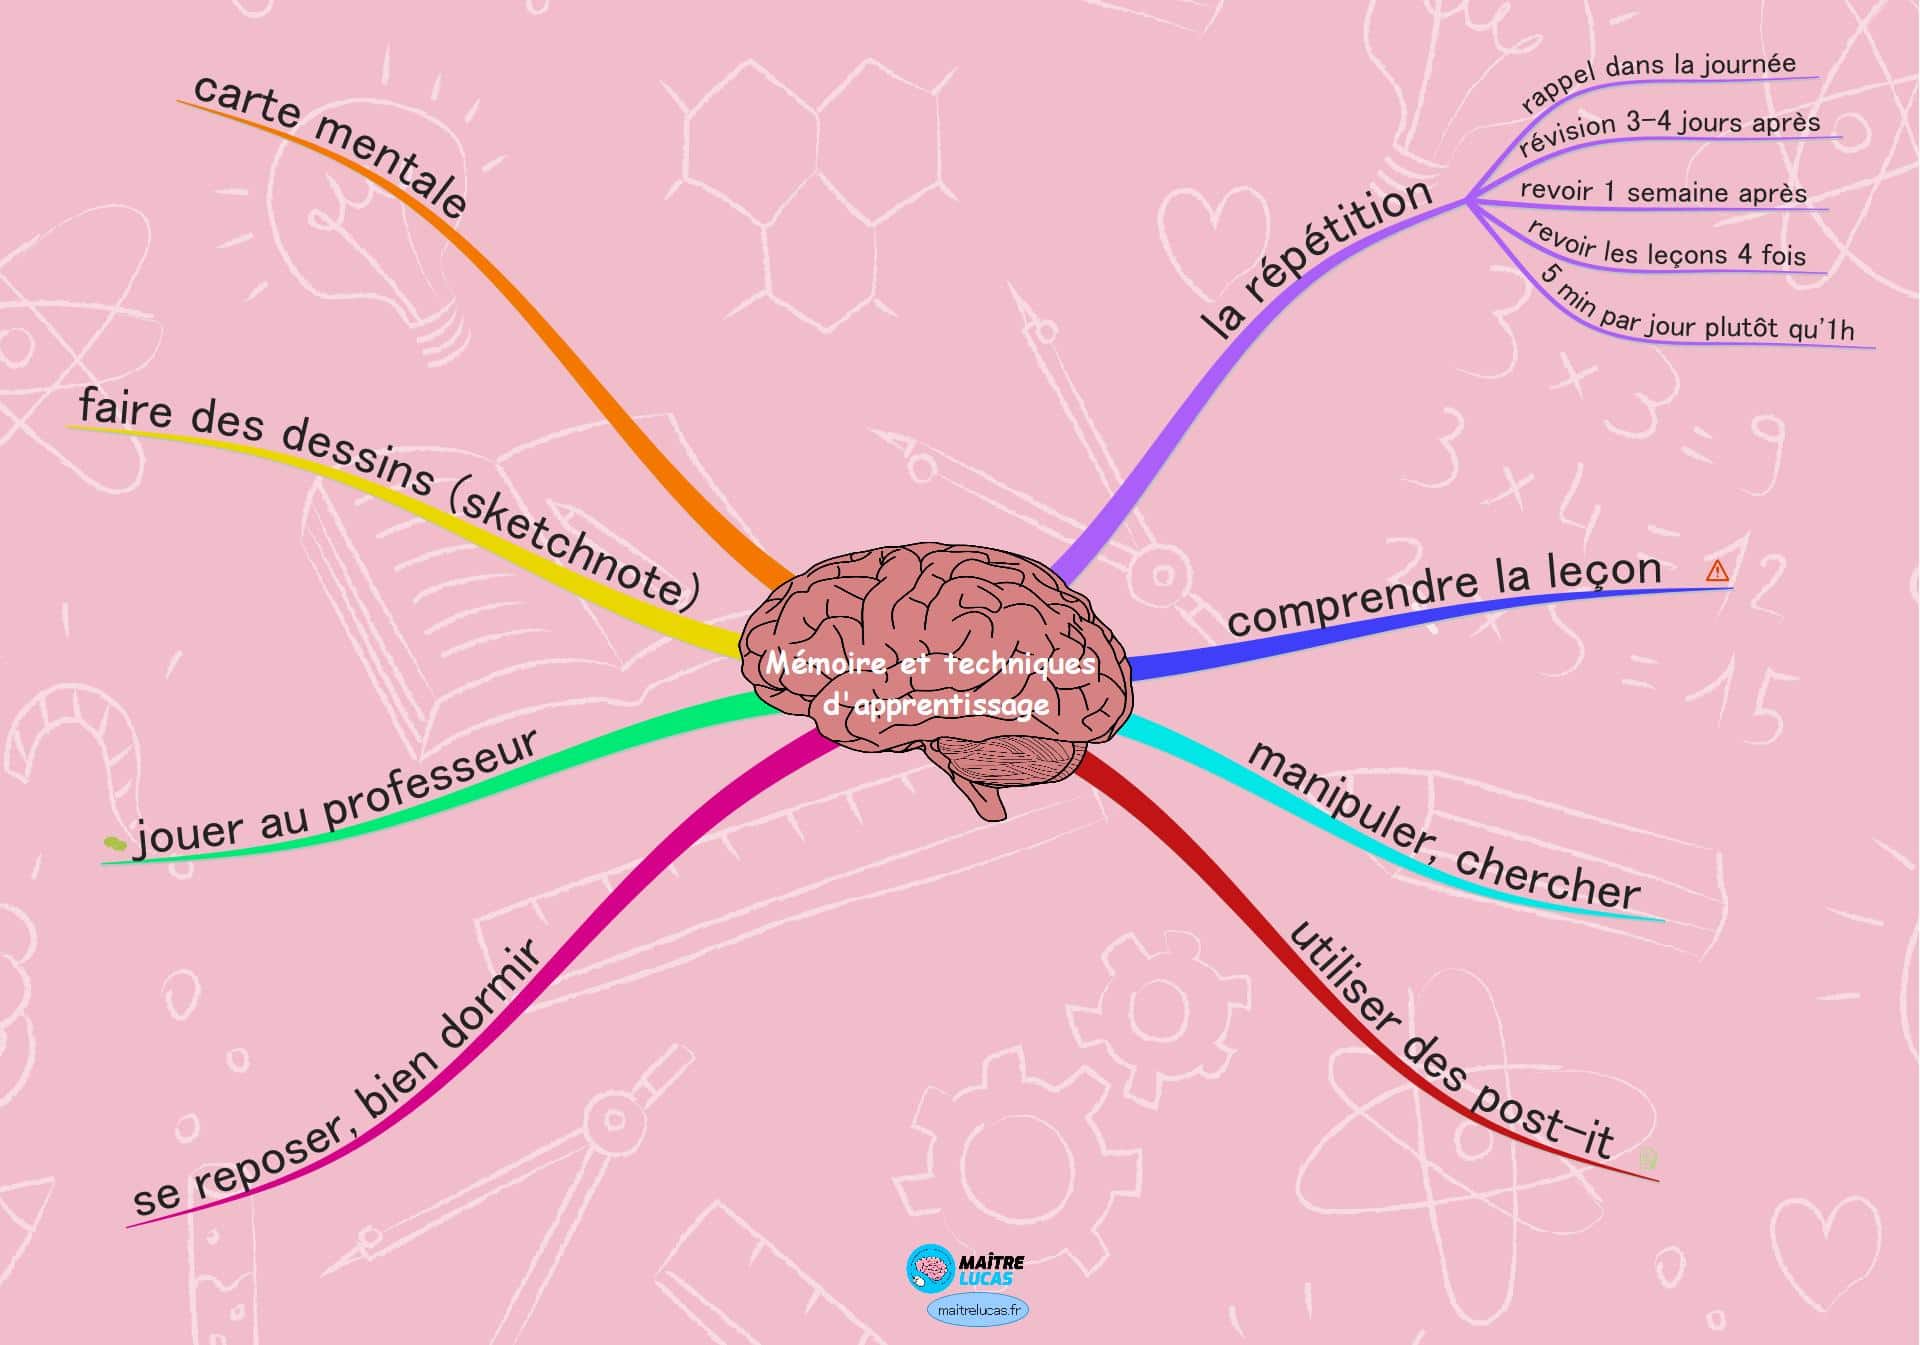 carte mentale mémoire et techniques d'apprentissages